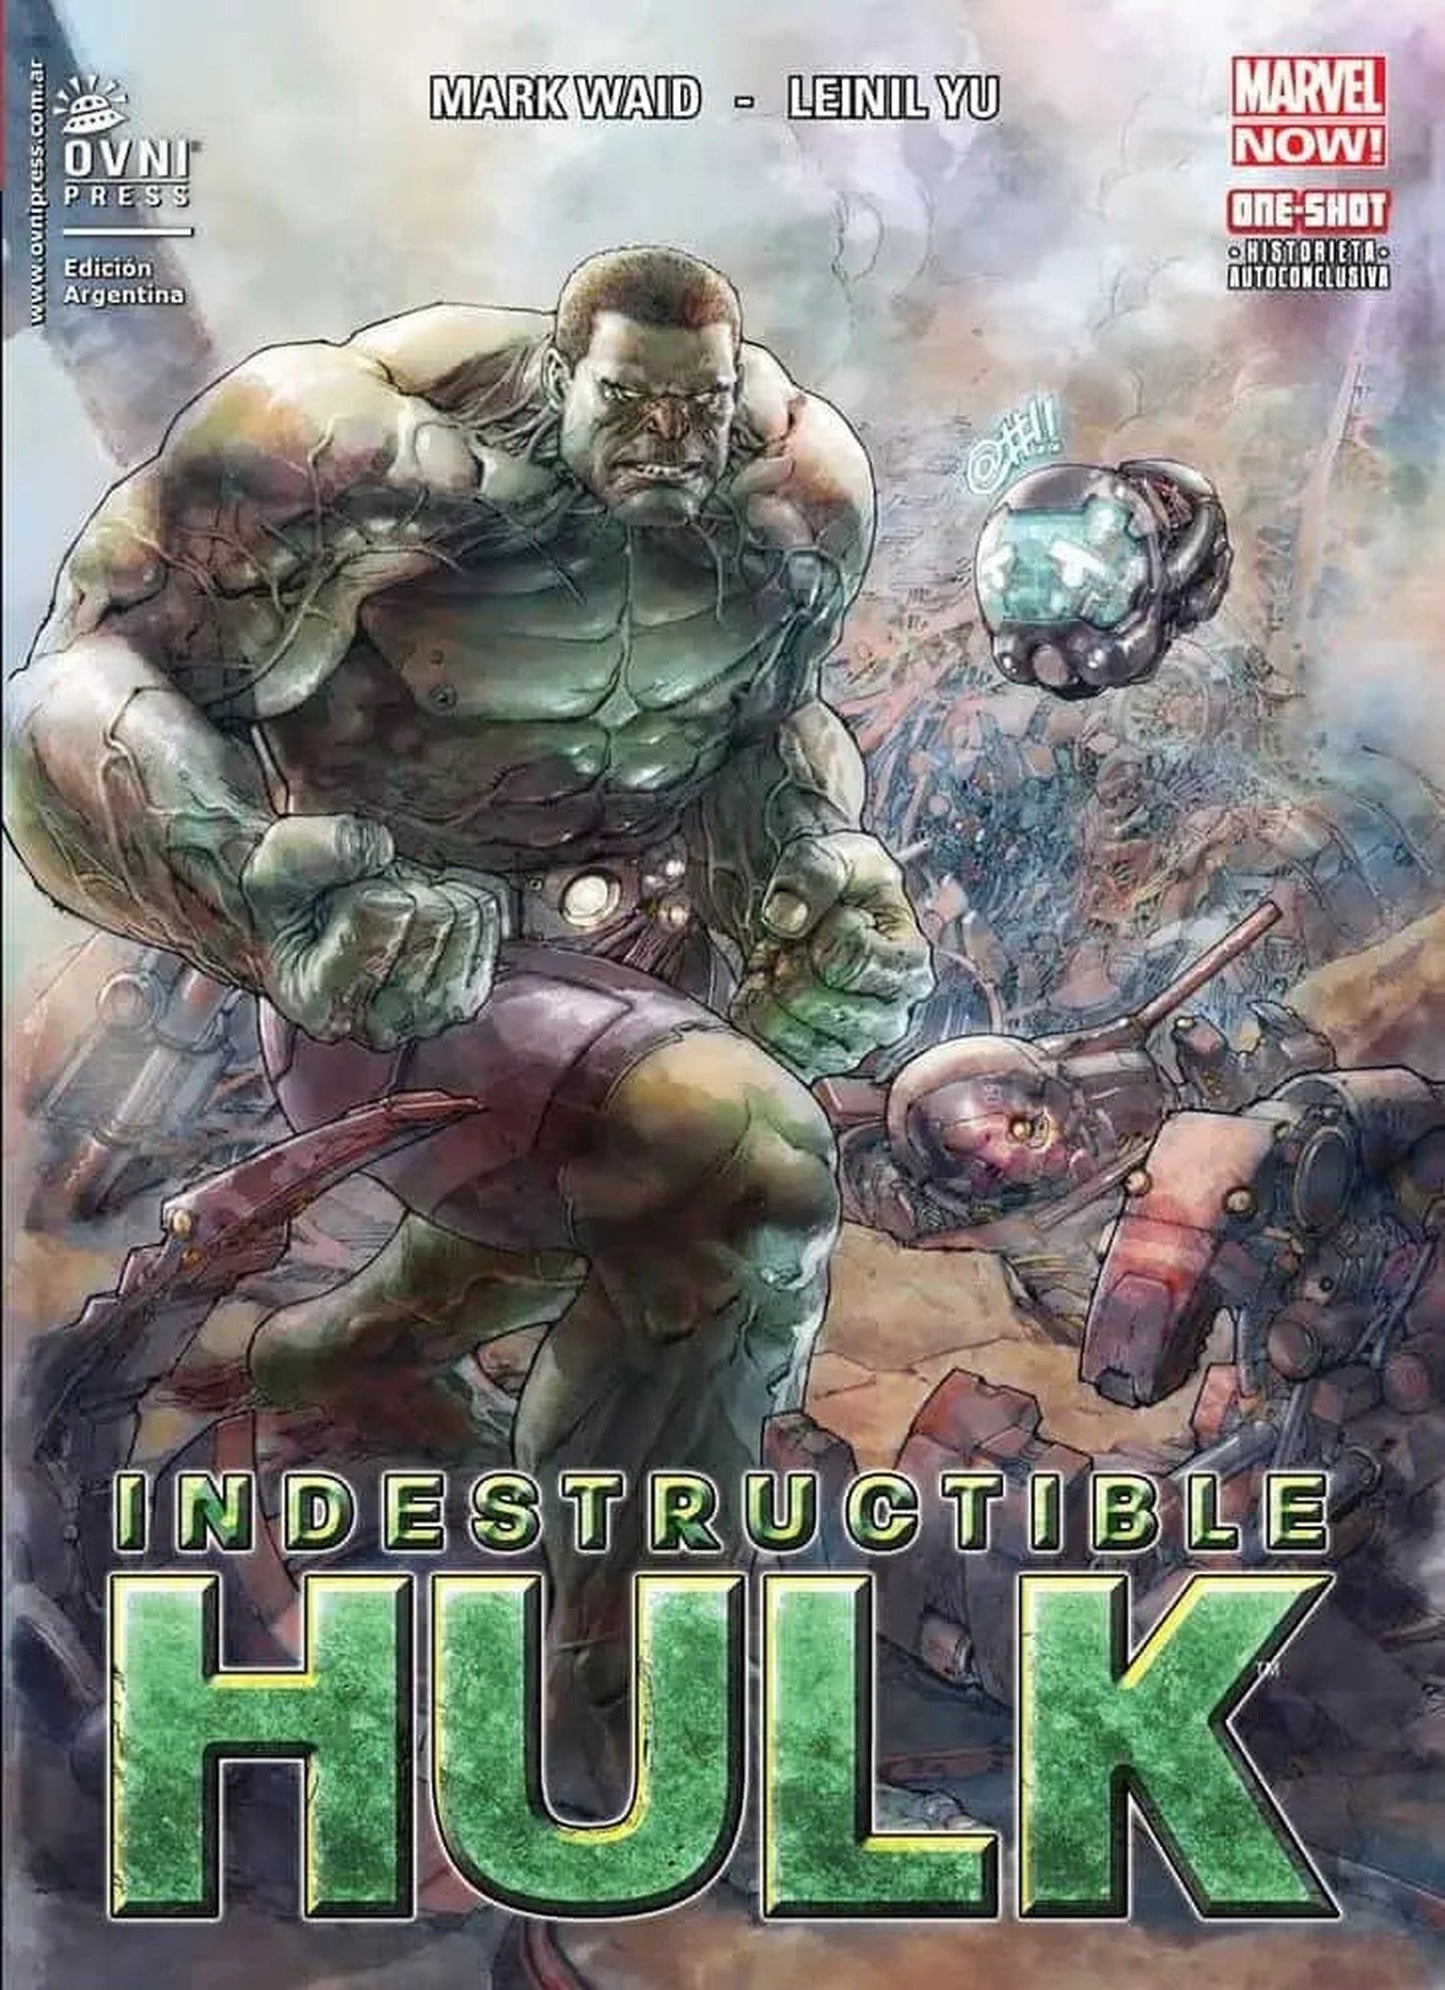 Indestructible Hulk Vol. 01 OVNI Press ENcuadrocomics